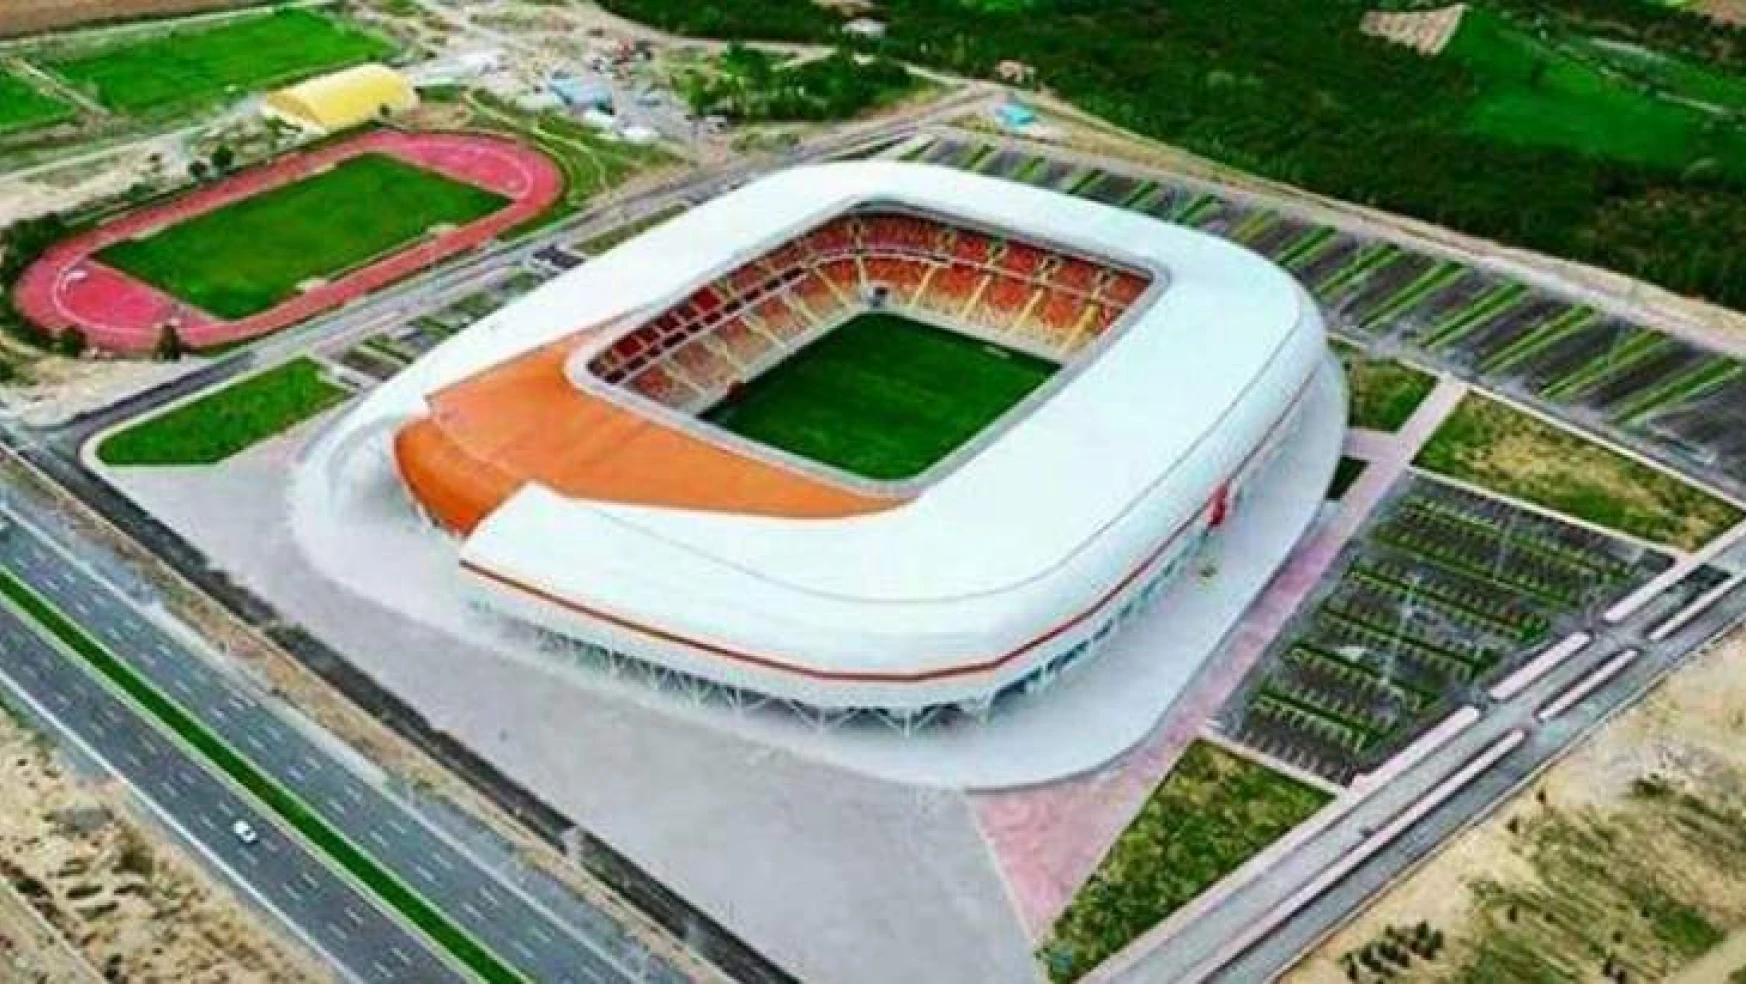 Yeni Malatya Stadyumu'nun Kullanım Hakkı EYMS'de